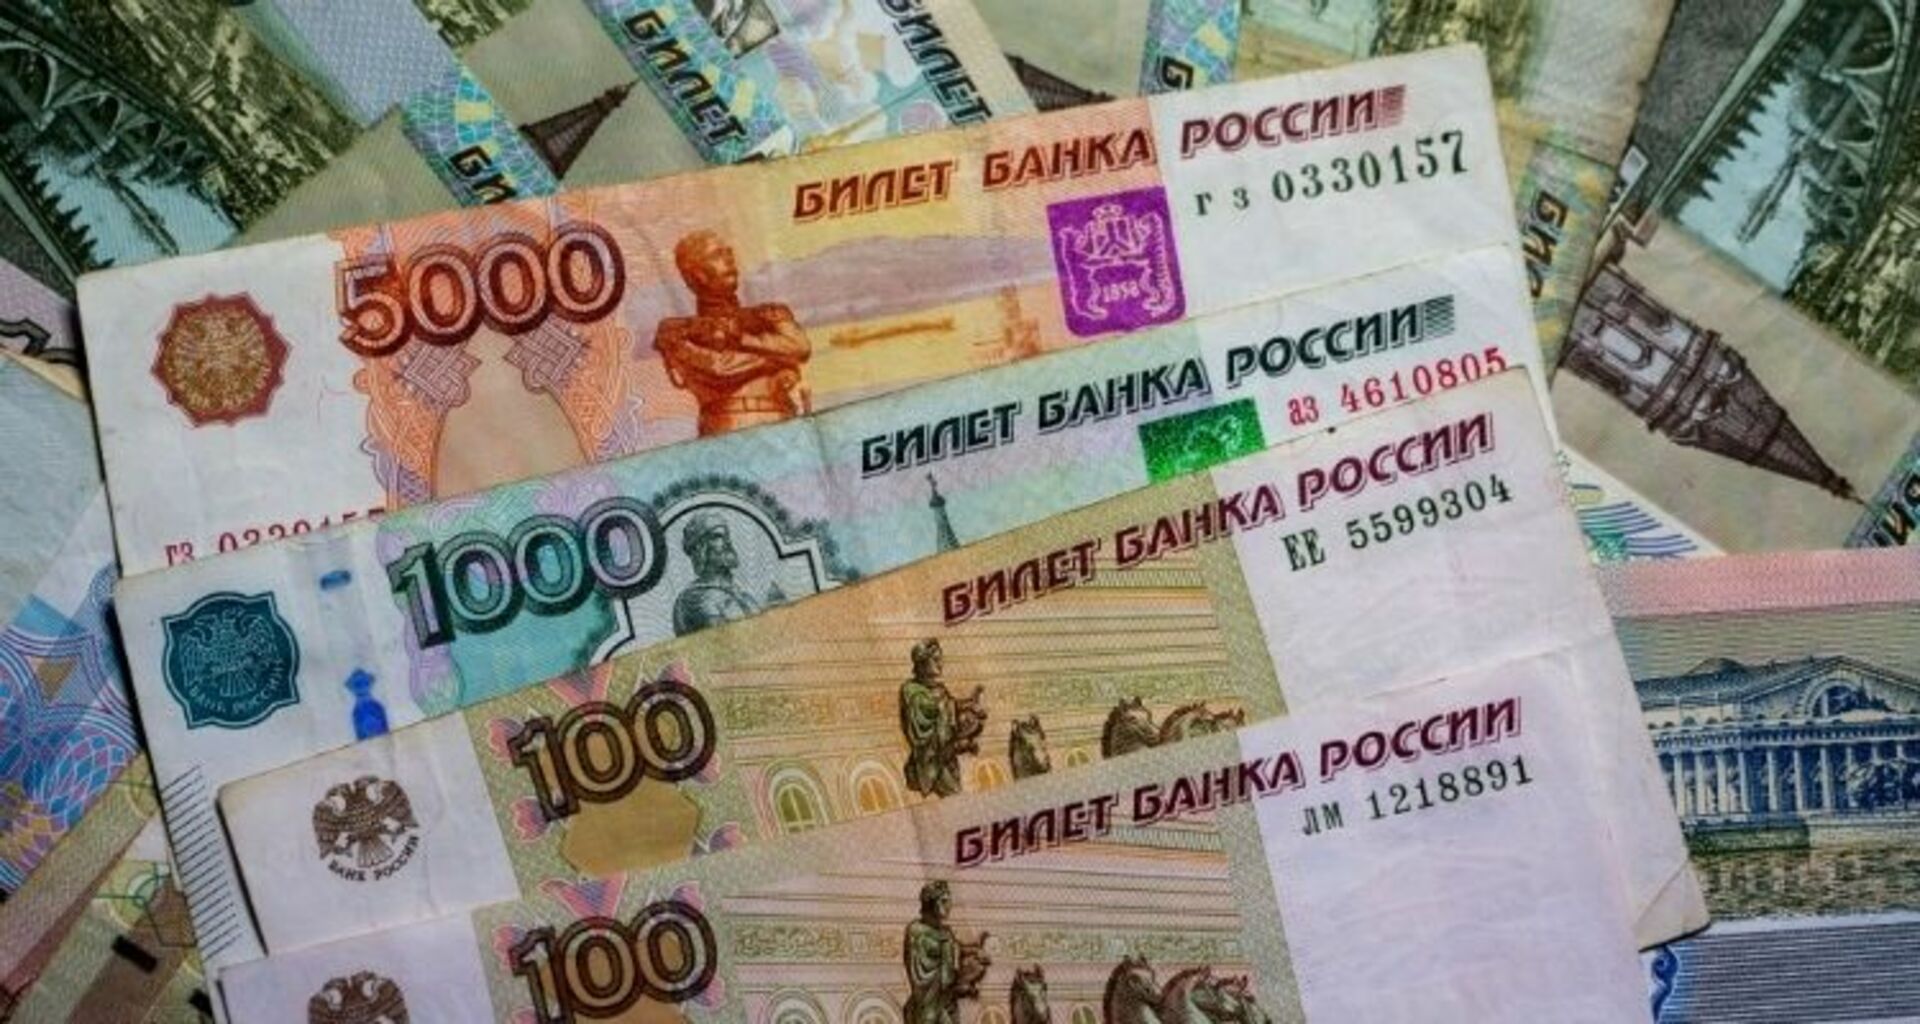 Национальная валюта российской федерации. Российская валюта. Валюта рубль. Национальная валюта России. Дубли валюта.